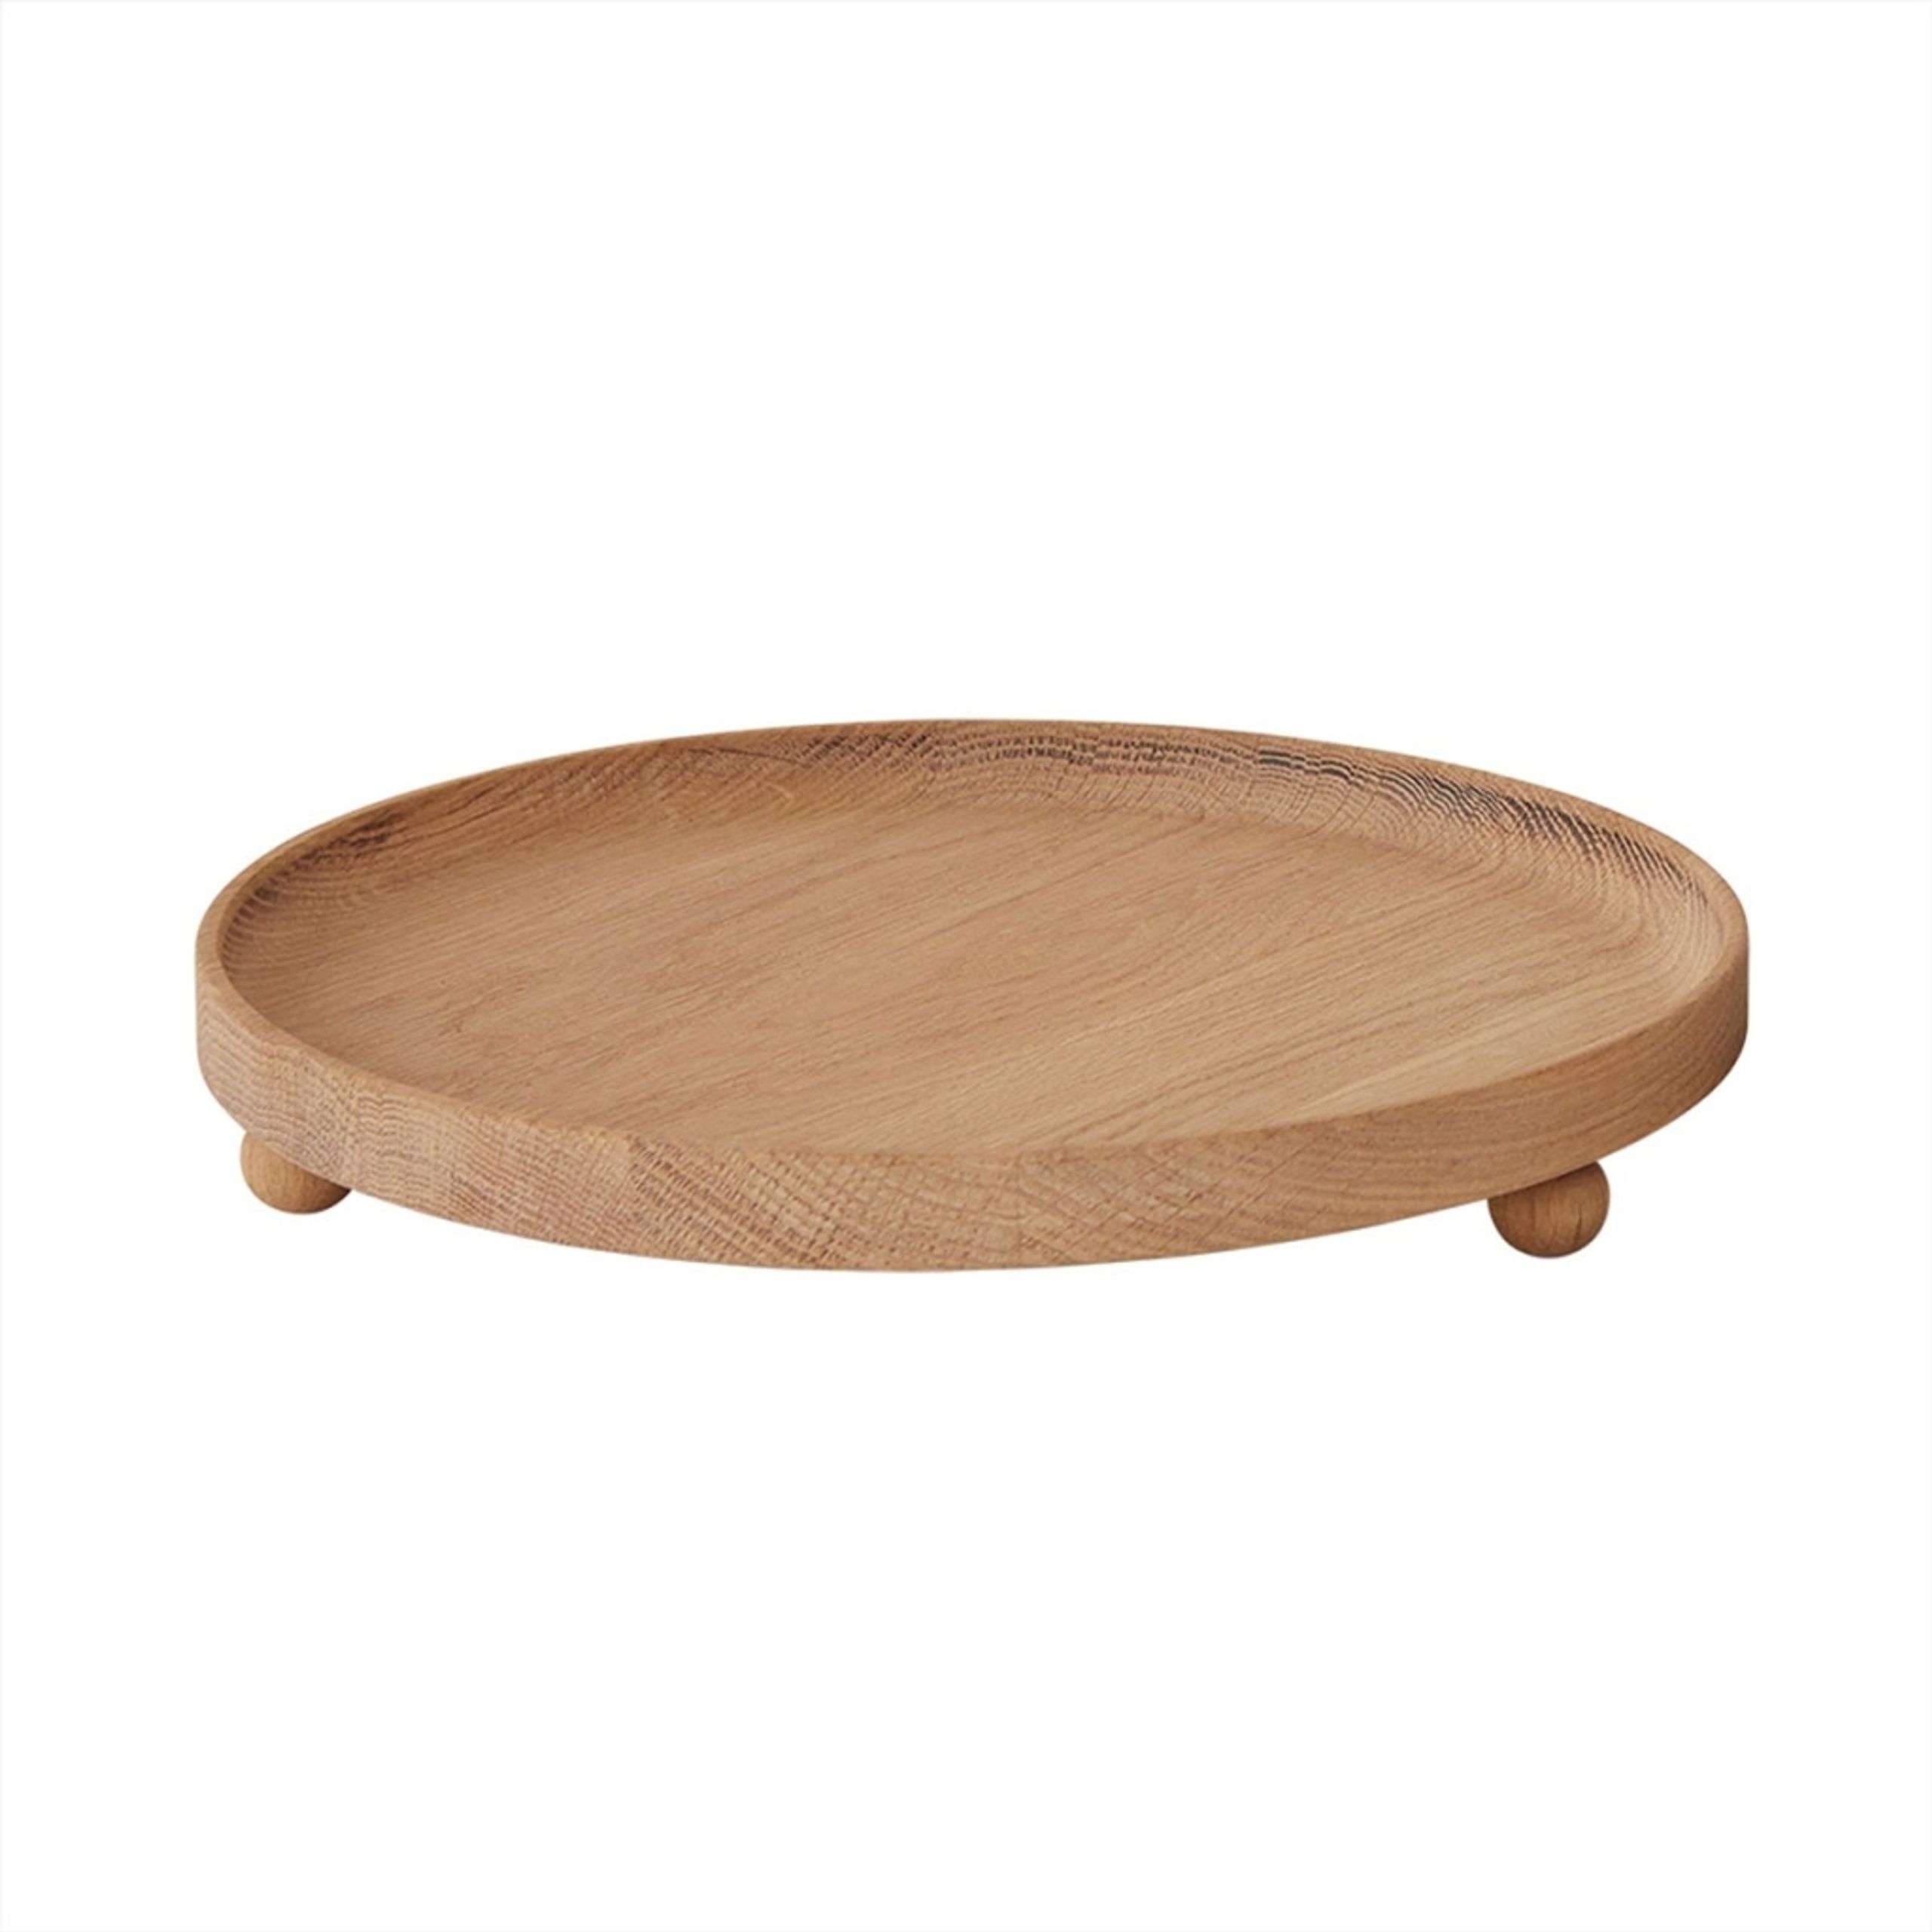 OYOY - Tablett - Inka Wood Tray Round - Nature - Large